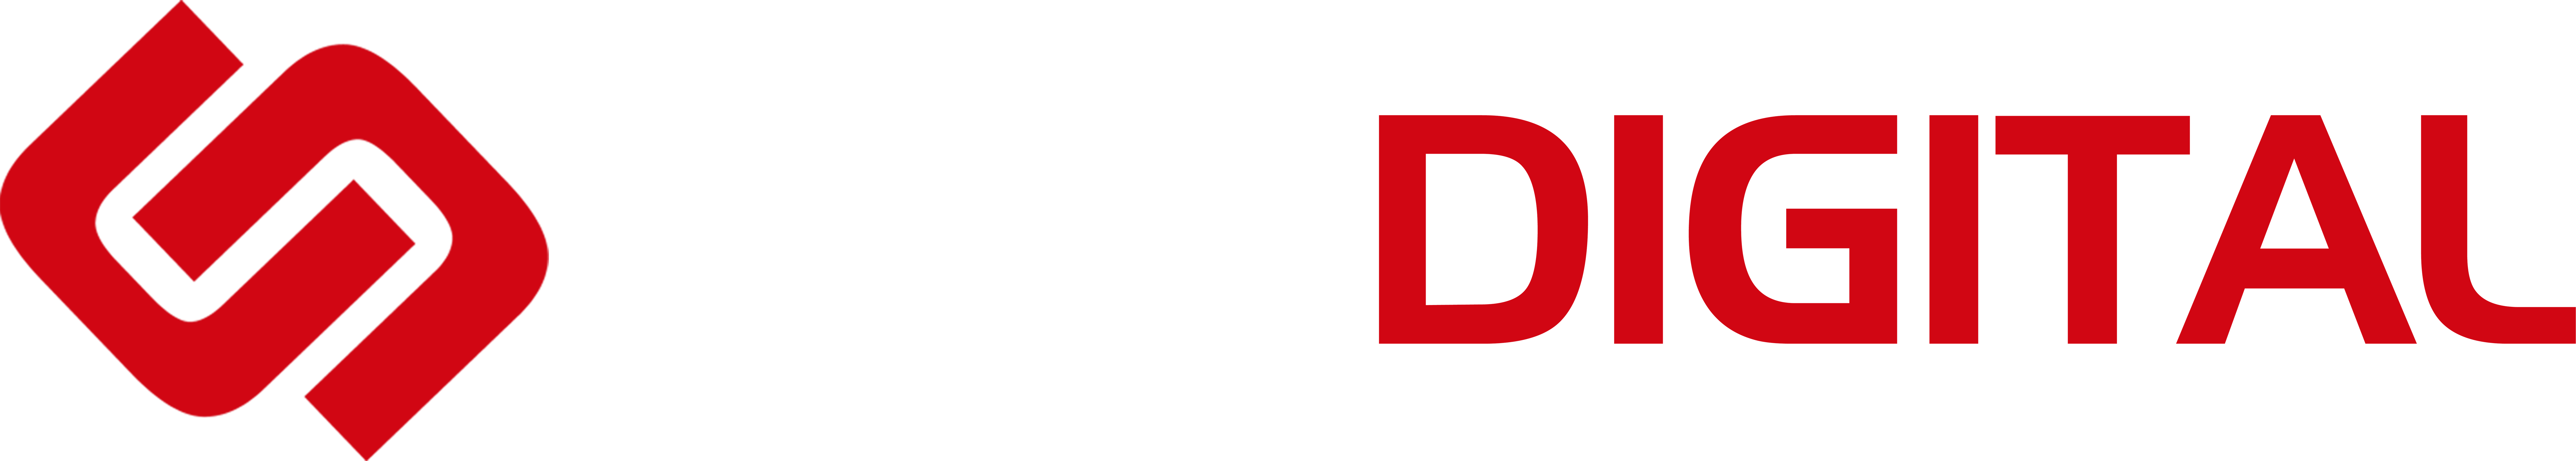 MSM-Digital-Logo-Master